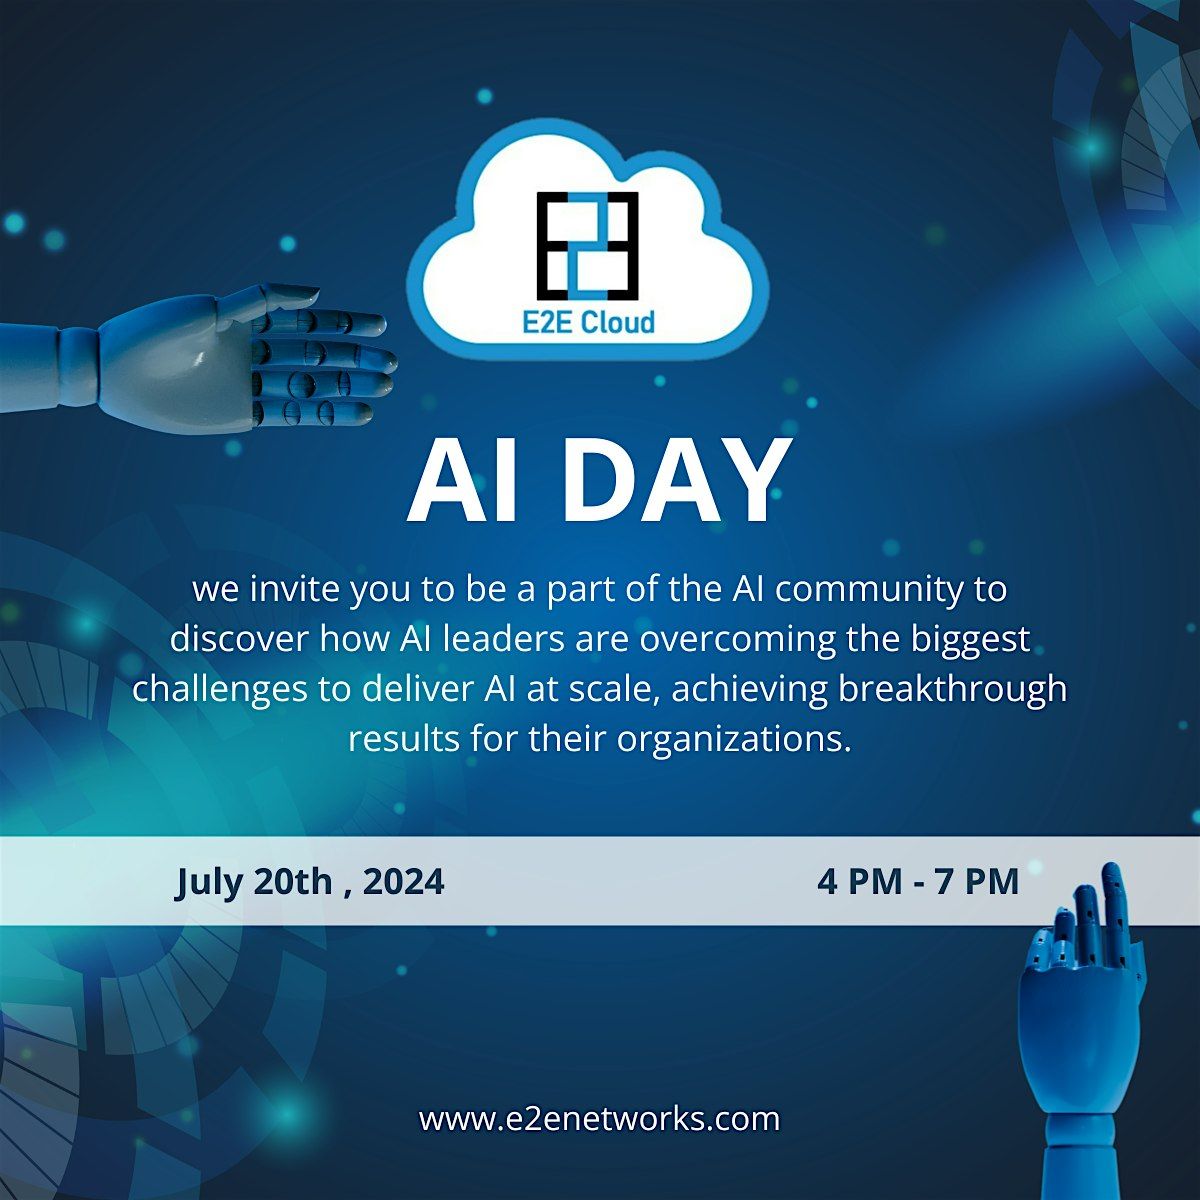 AI Day Mumbai